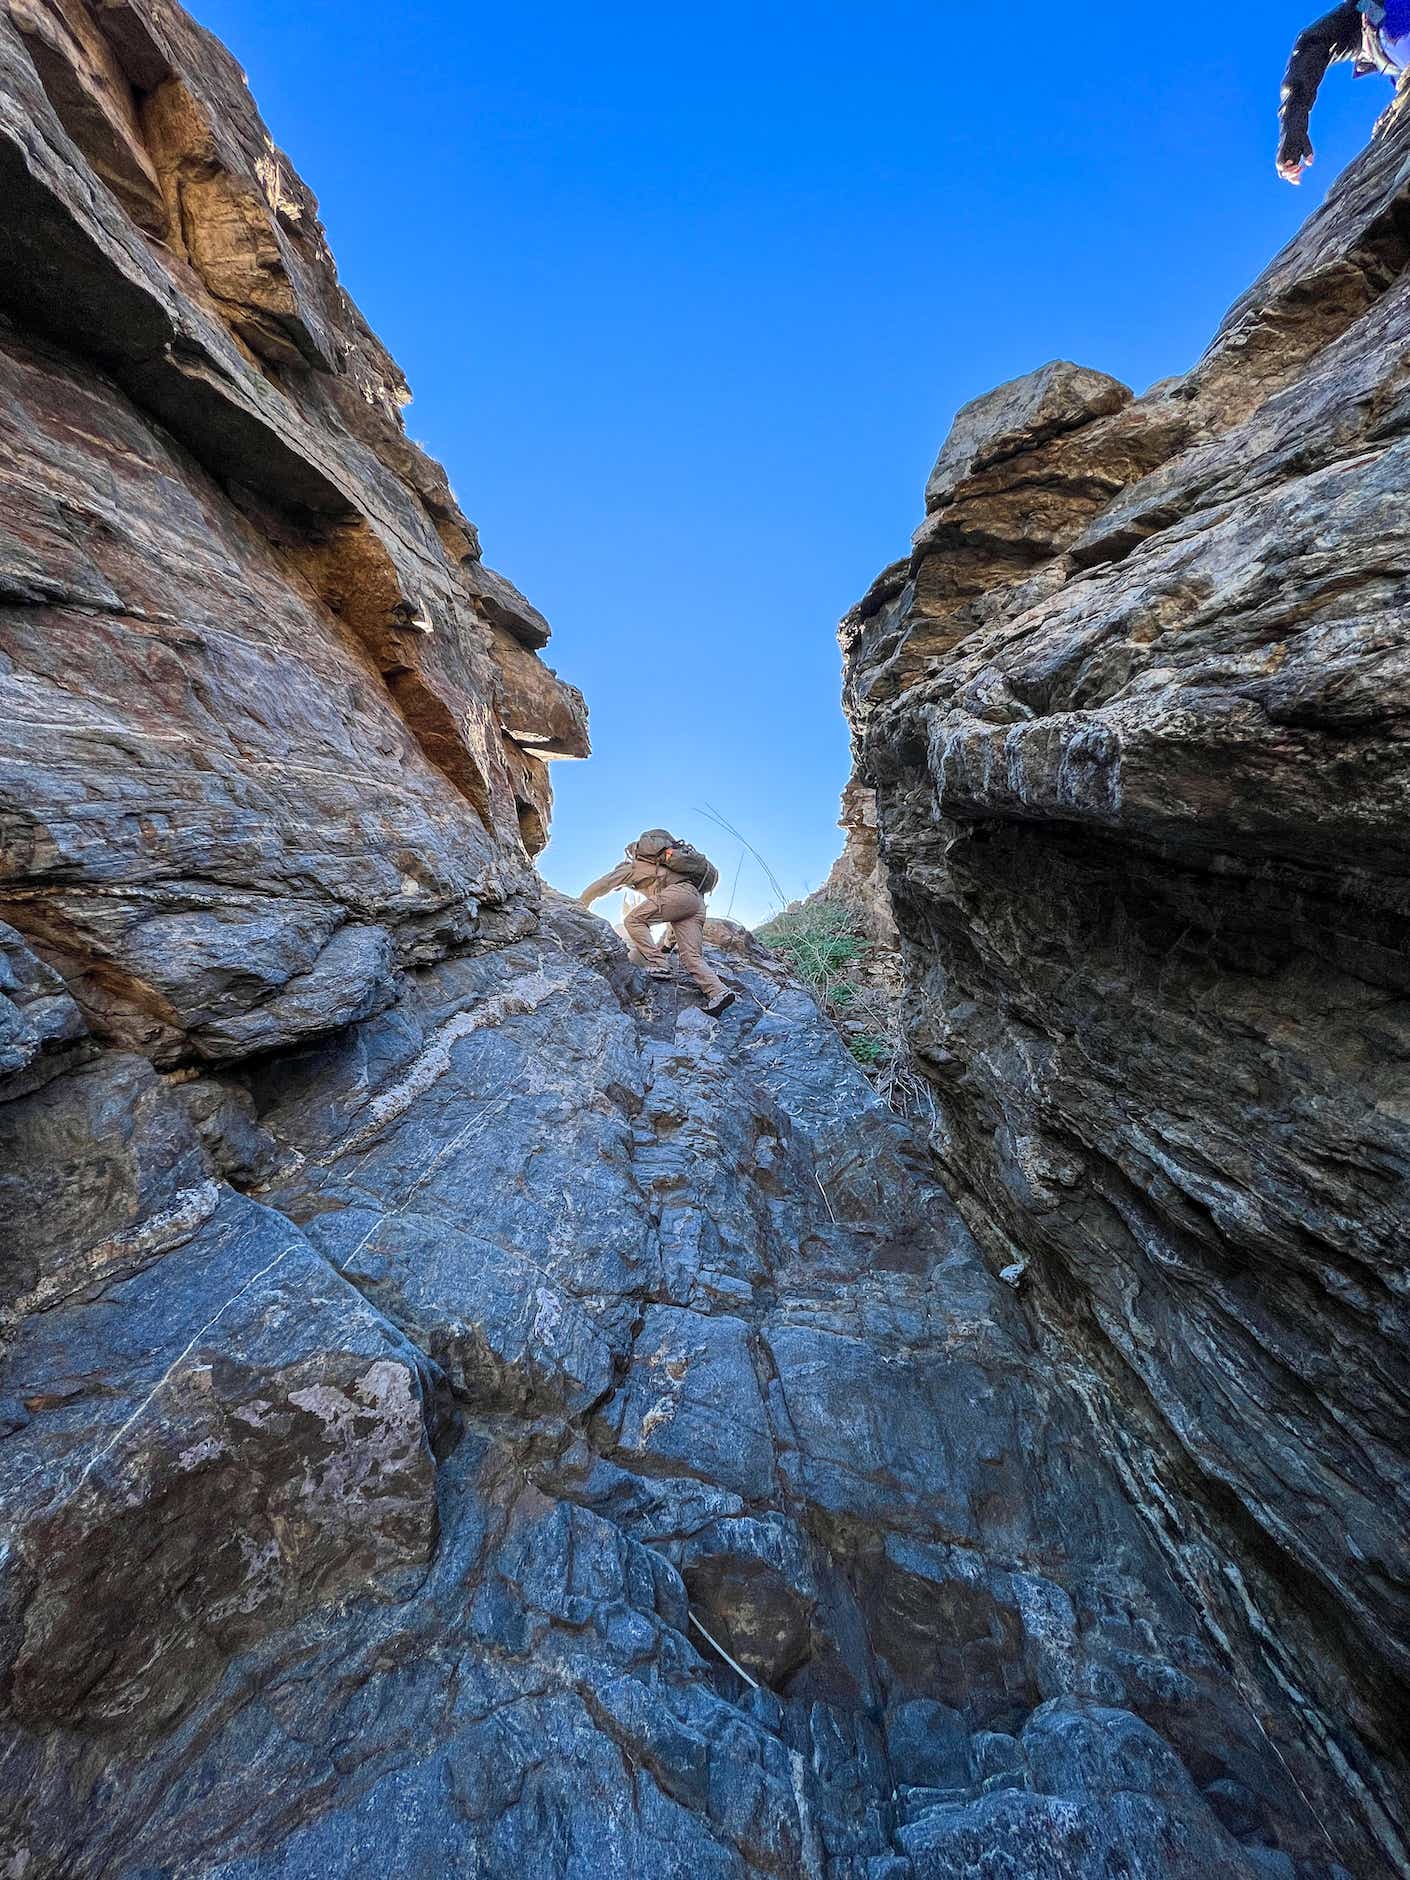 A person climbs a cliff